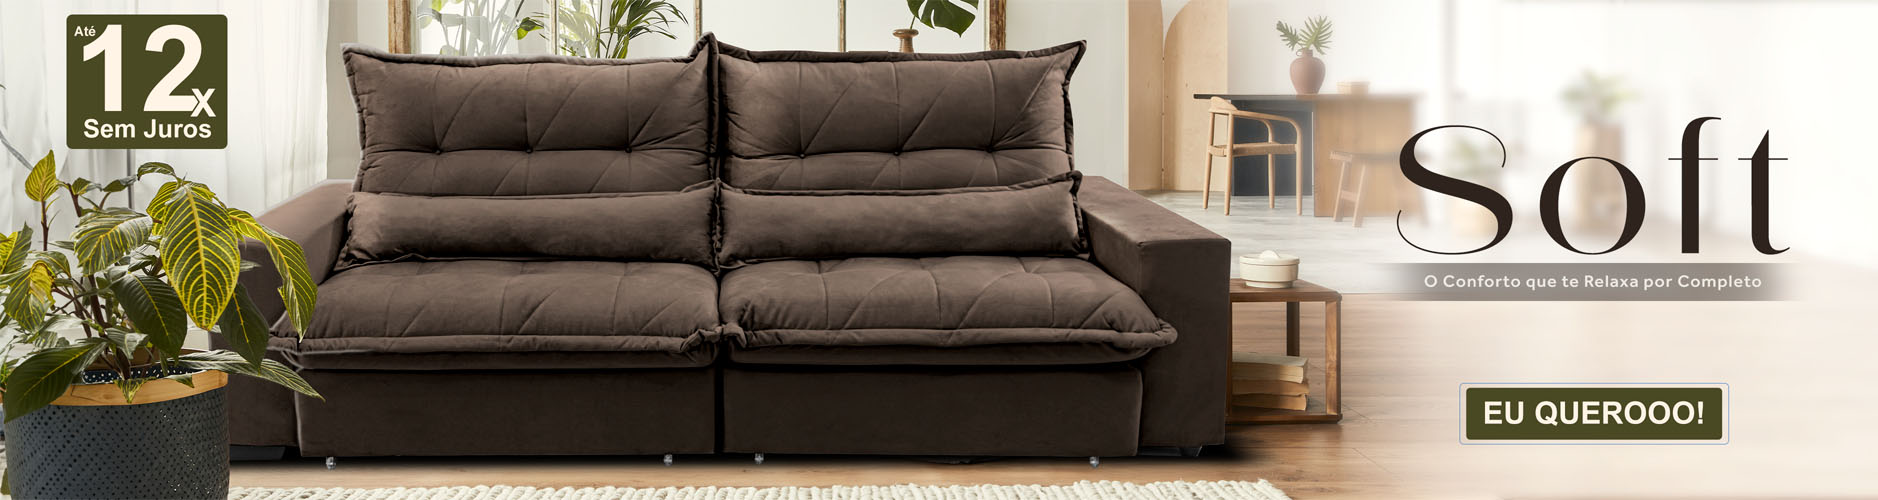 ofertas de sofa cama inbox soft retratil e reclinavel